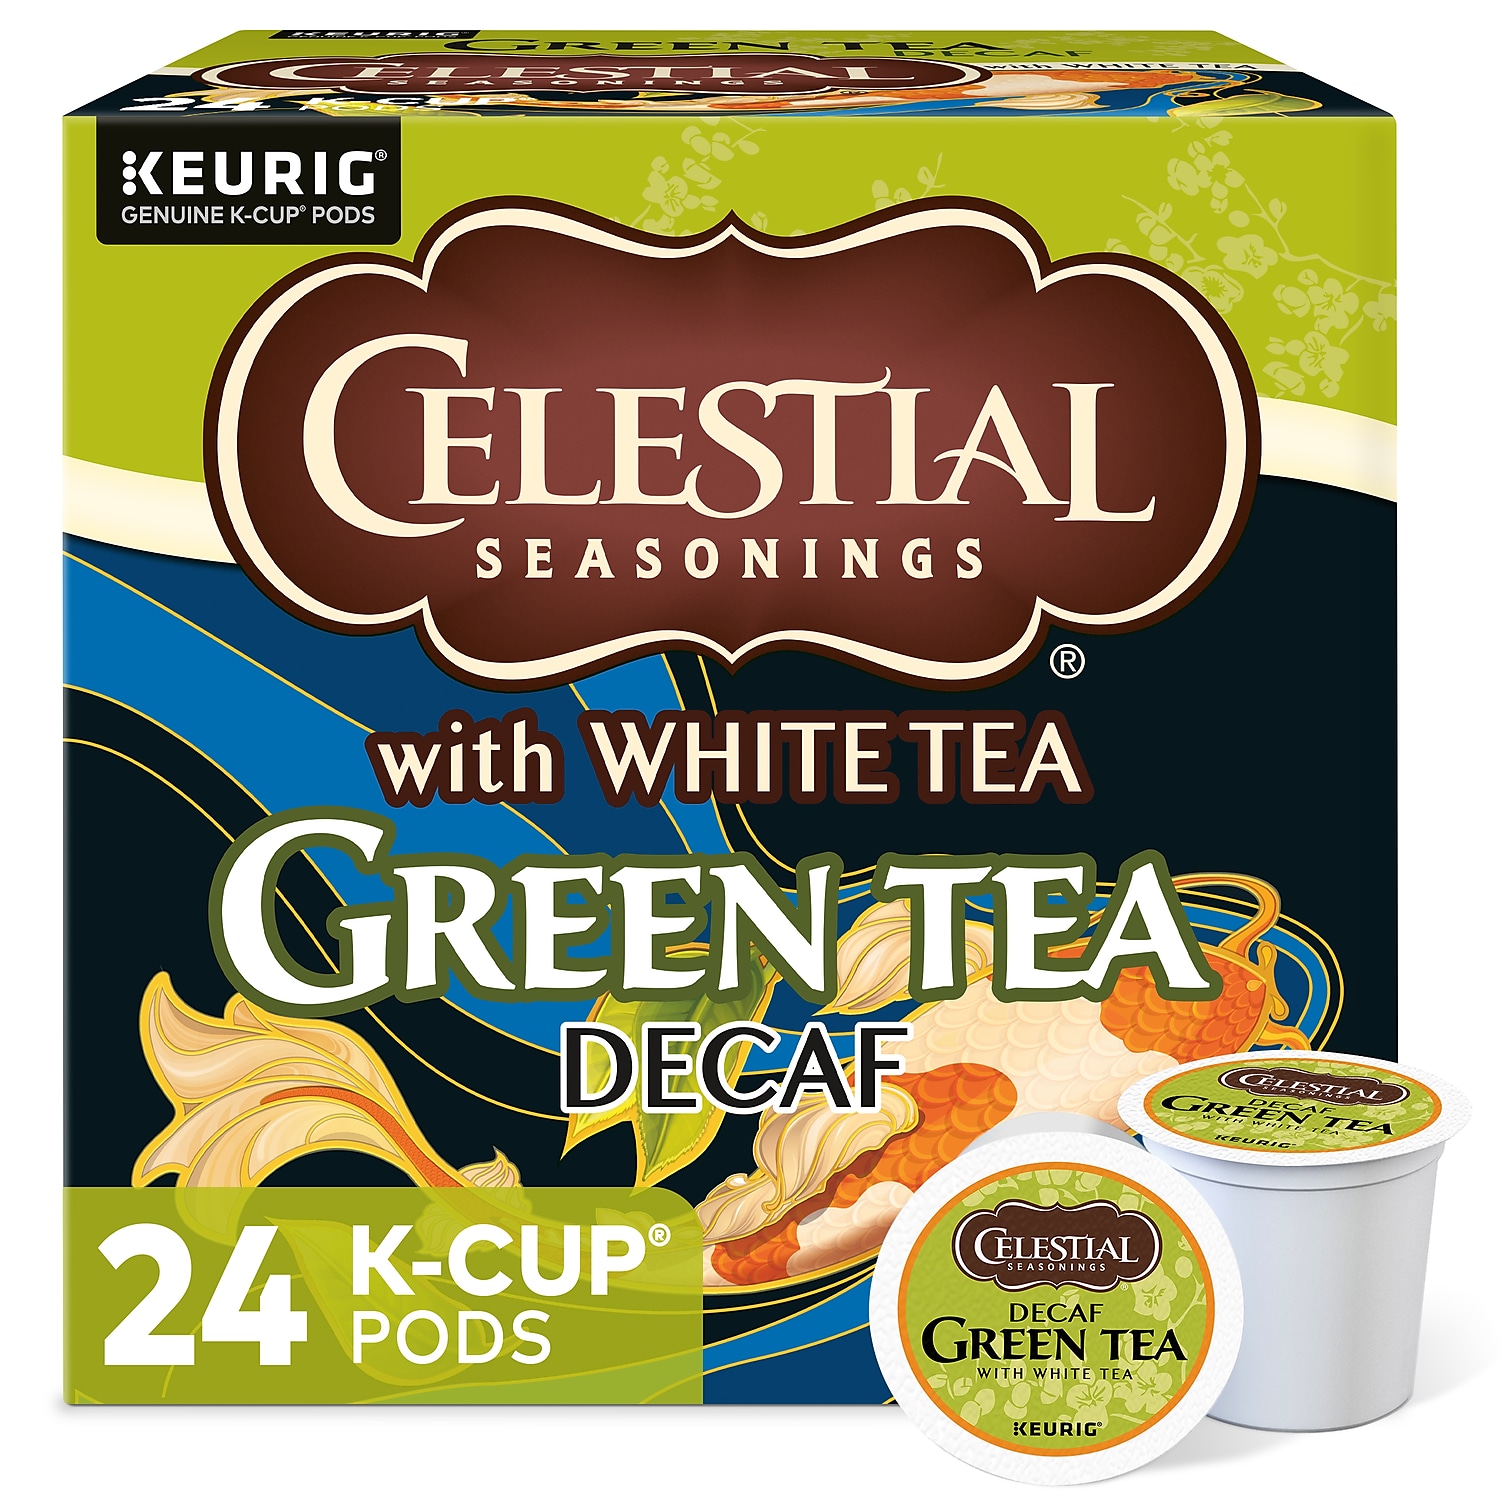 Celestial Seasonings Green Tea Decaf Keurig K-Cup Pods 24/Box 14737 - image 1 of 6